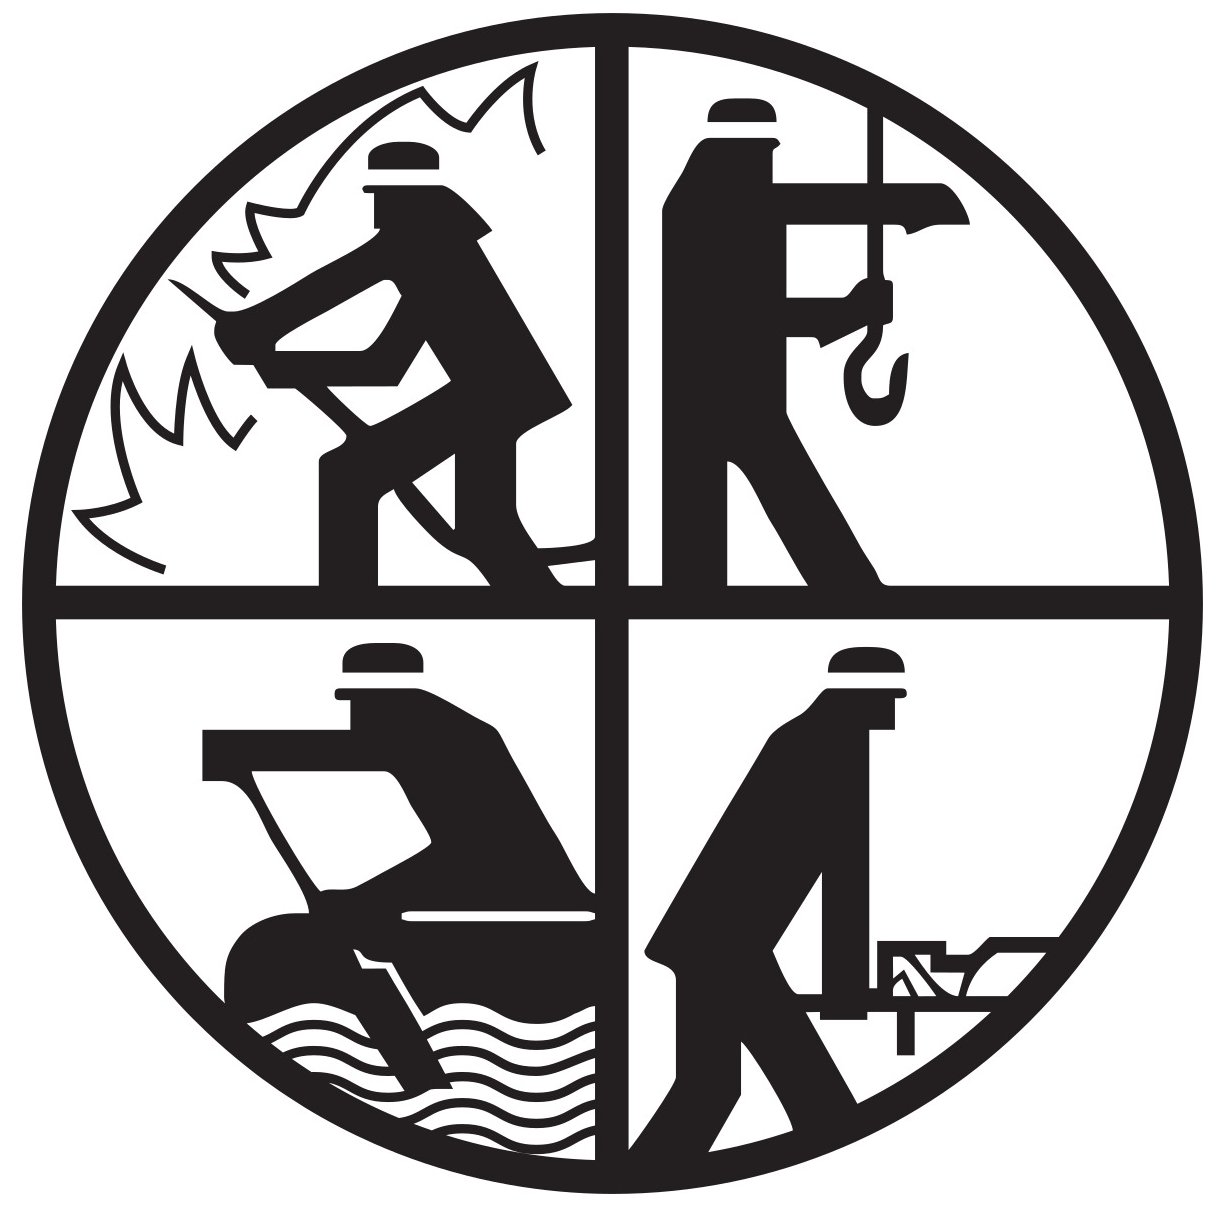 Logo der Feuerwehr